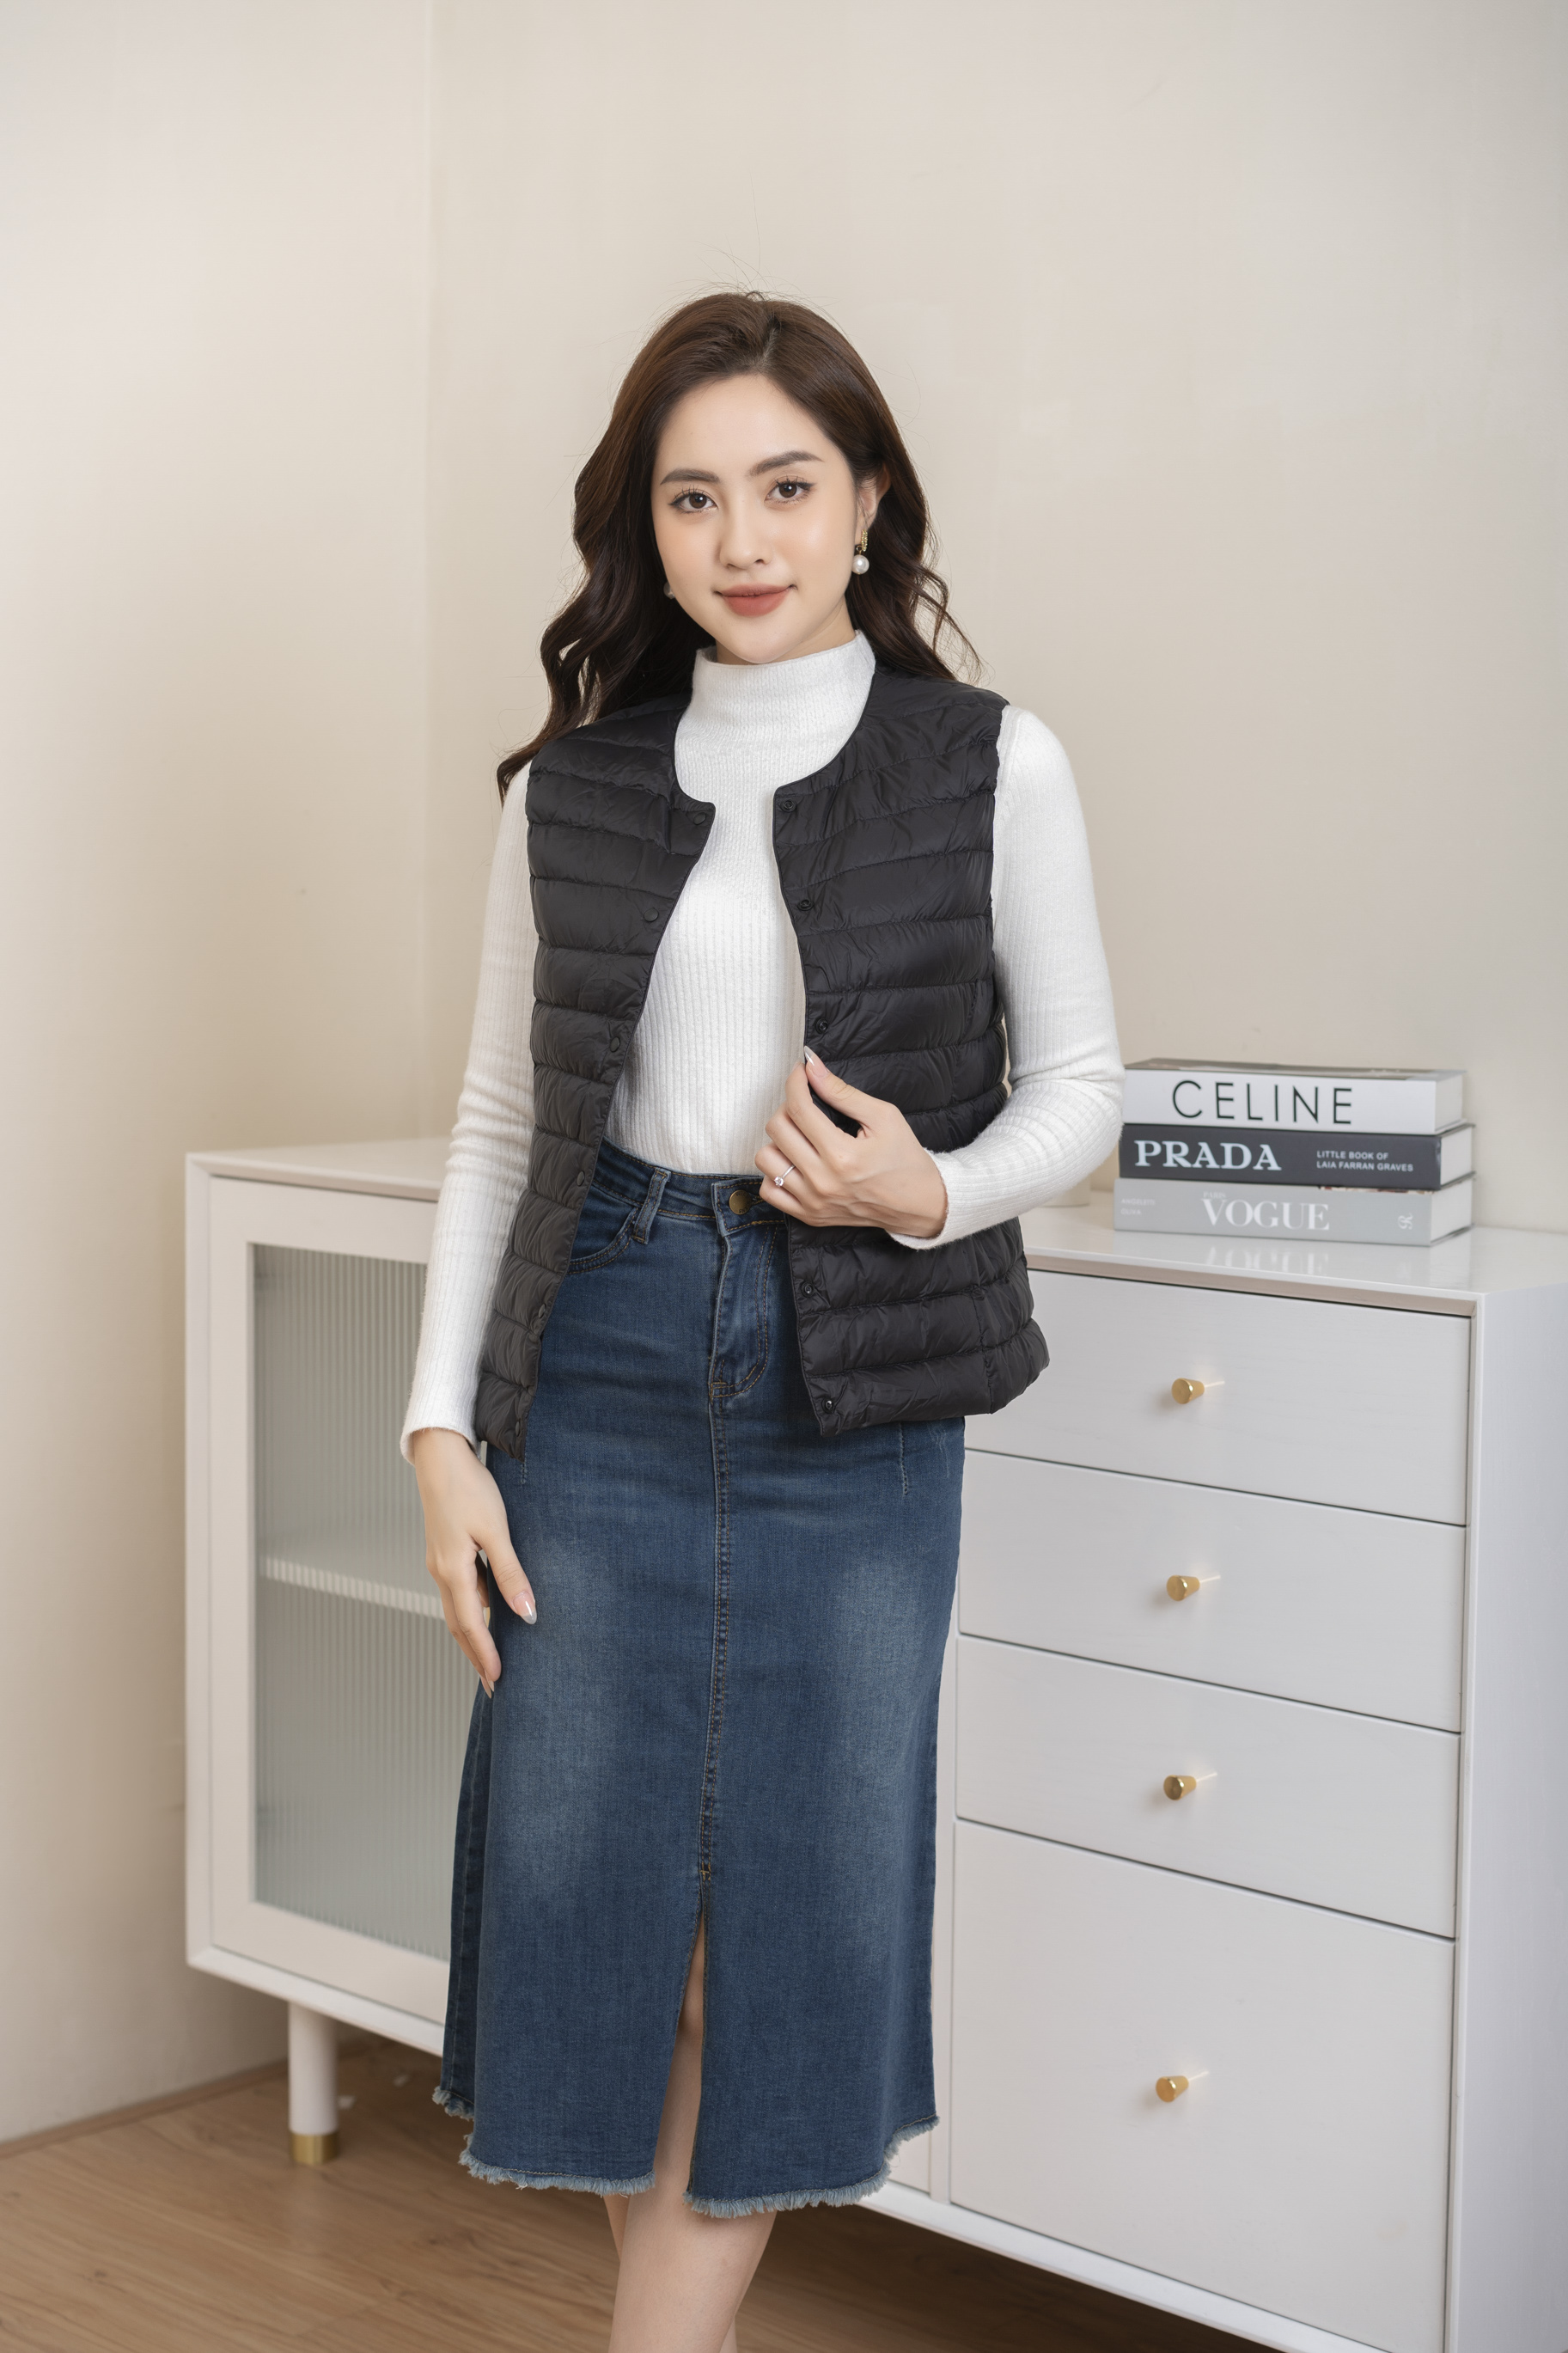 Bỏ túi” những cách phối đồ thời thượng với áo gile len | IVY moda